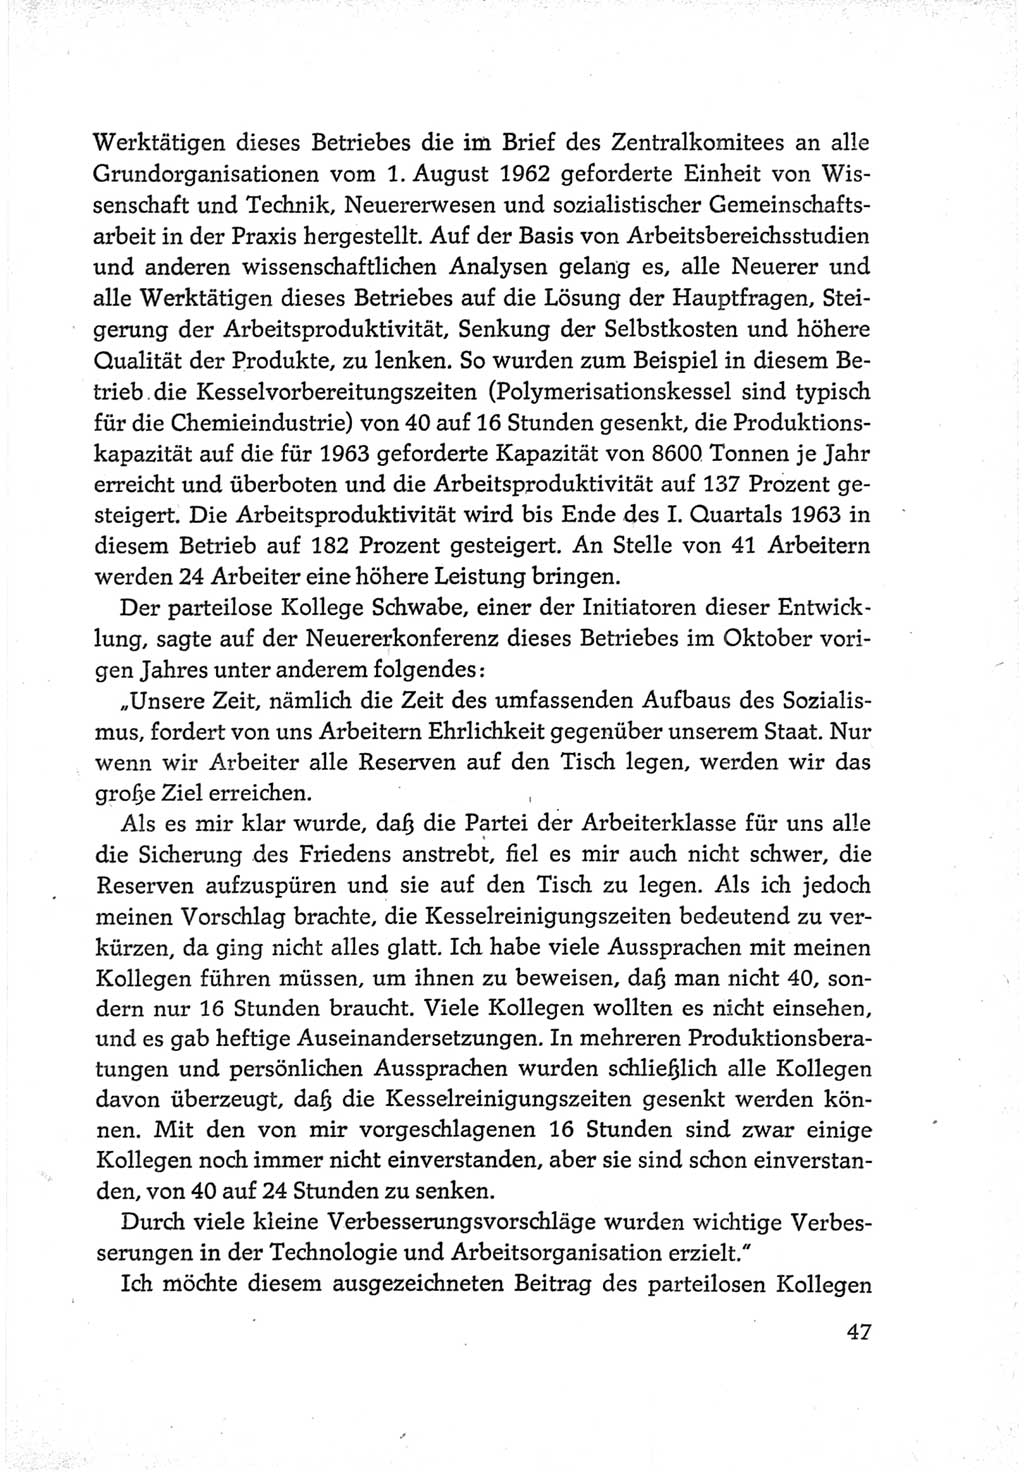 Protokoll der Verhandlungen des Ⅵ. Parteitages der Sozialistischen Einheitspartei Deutschlands (SED) [Deutsche Demokratische Republik (DDR)] 1963, Band Ⅲ, Seite 47 (Prot. Verh. Ⅵ. PT SED DDR 1963, Bd. Ⅲ, S. 47)